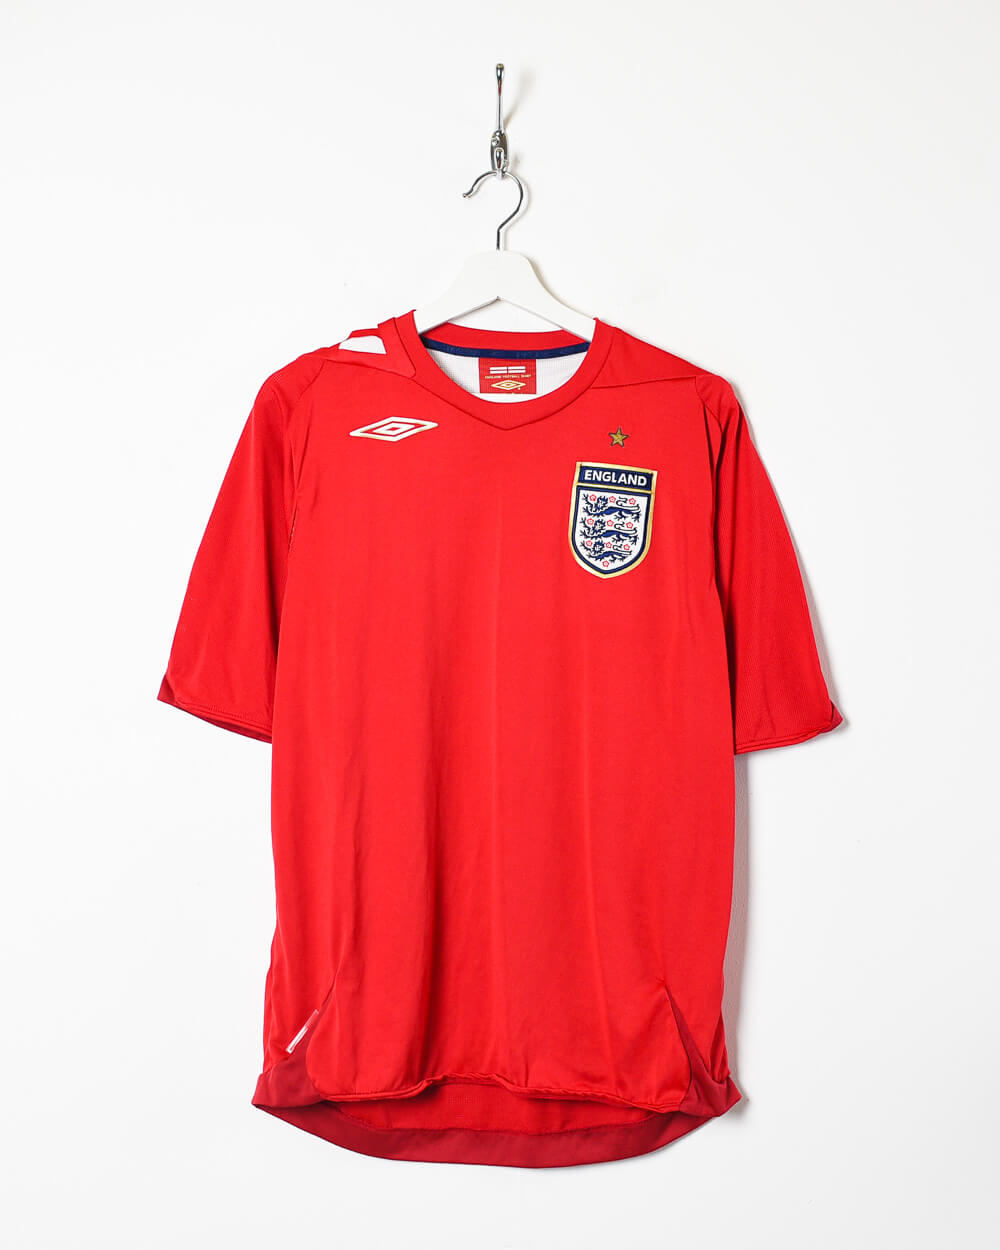 Red Umbro 2006/07 England Away Shirt - Medium